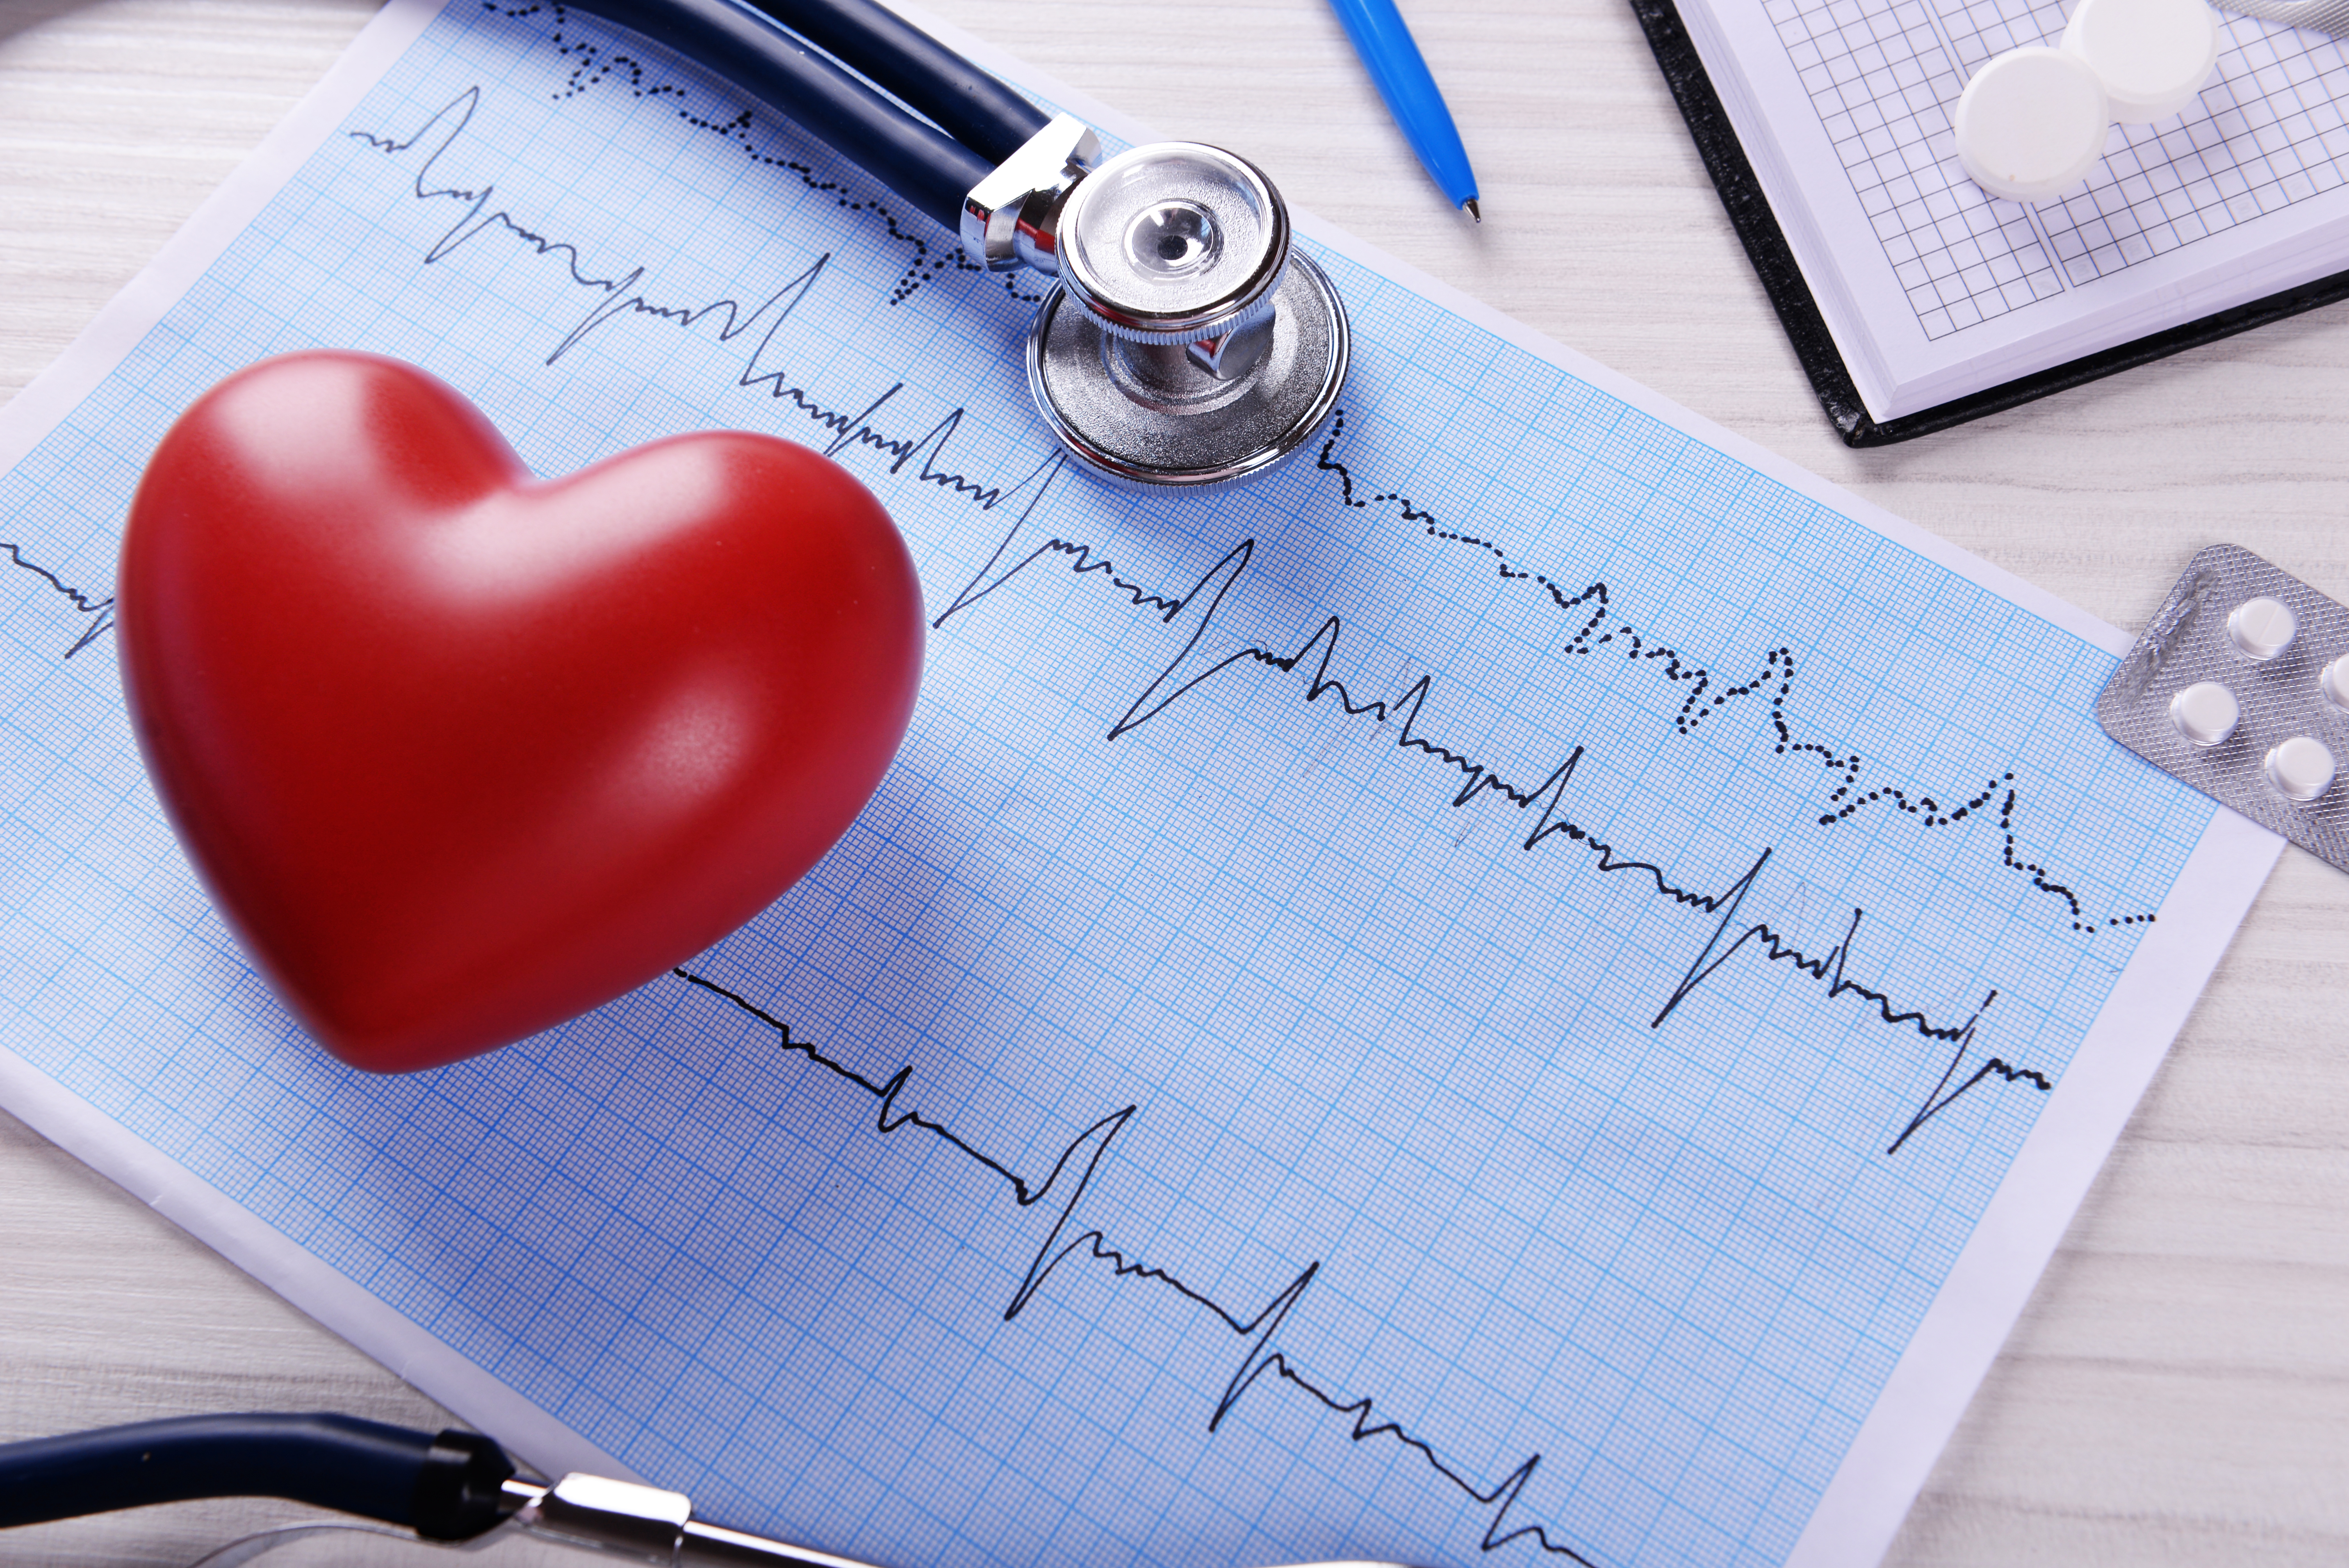 Fibrilacija atrija (AFIB) i visoki tlak su najčešći rizični faktori za bolesti srca i nastanak moždanog udara